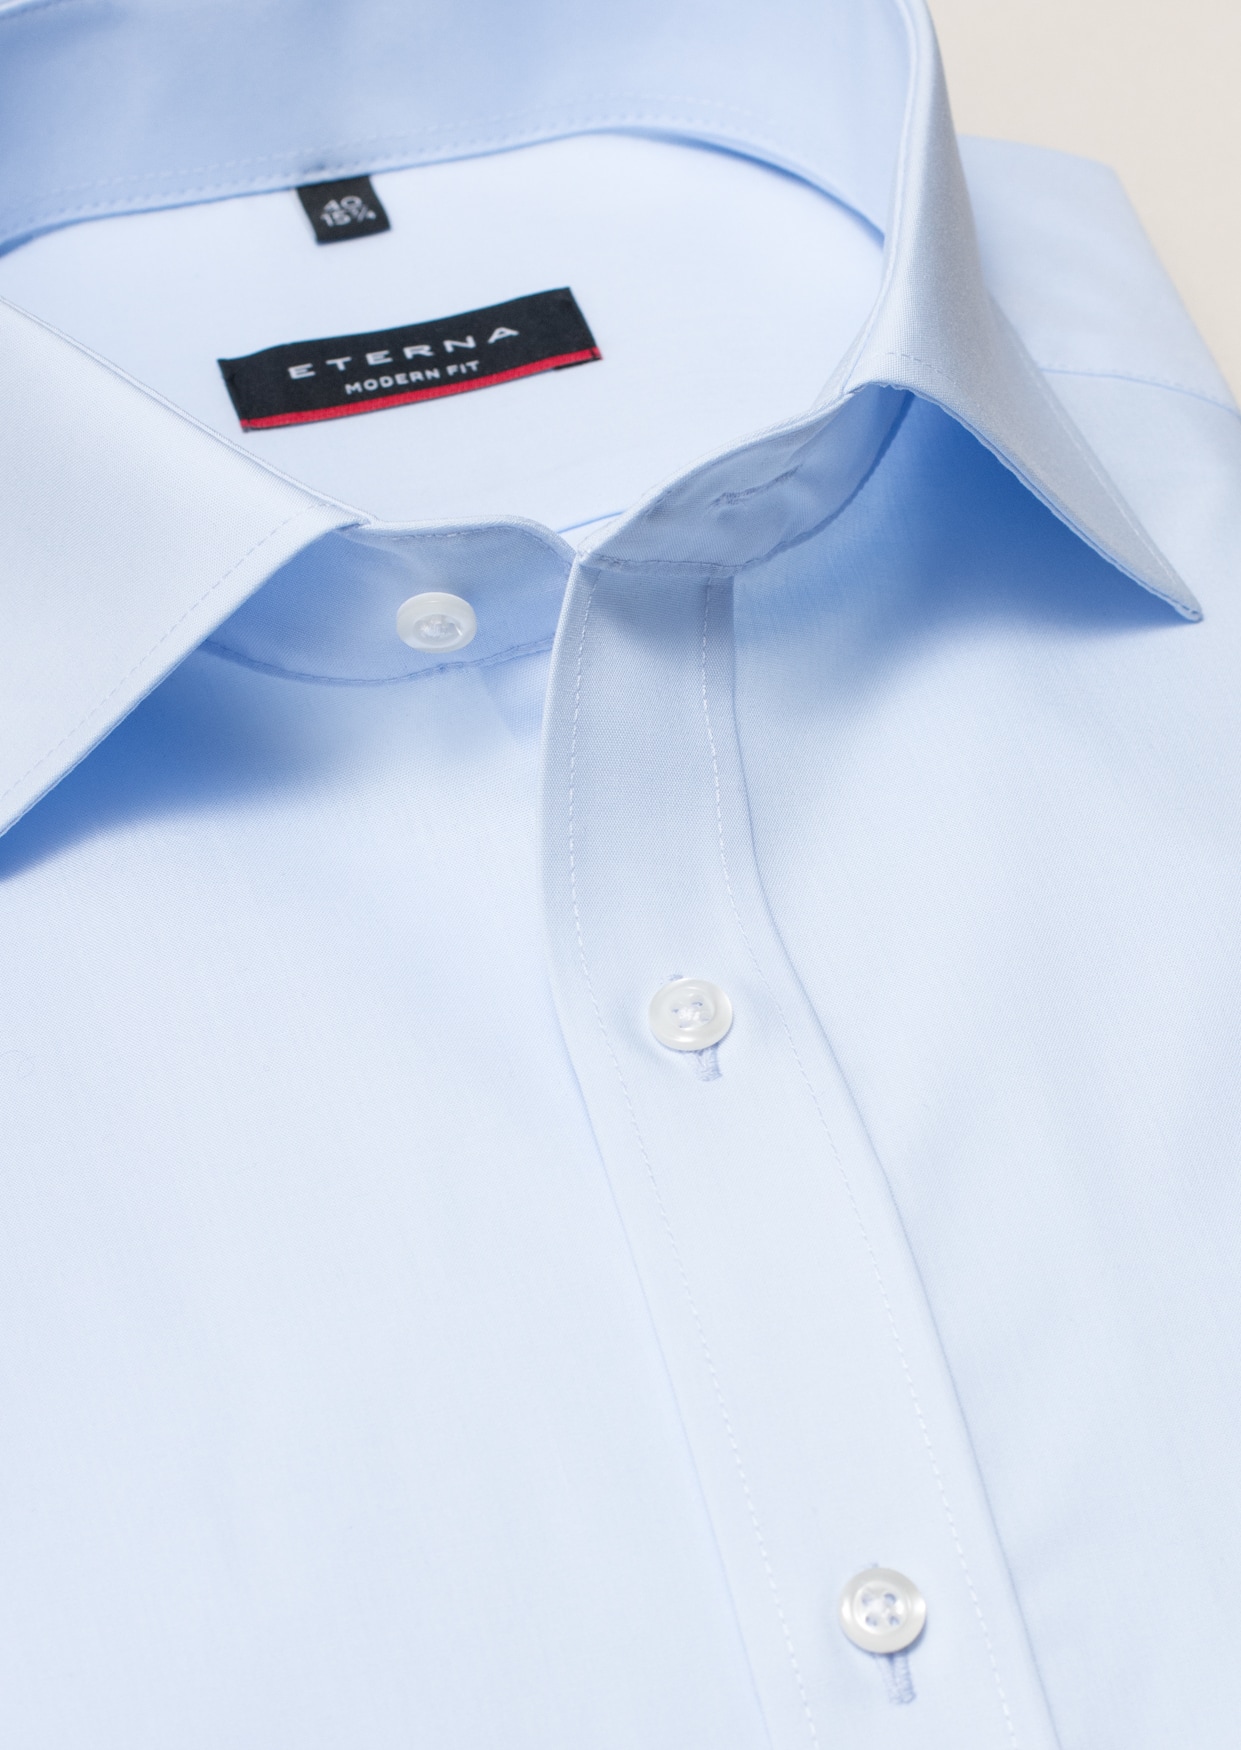 MODERN FIT Original Shirt in | plain | blue long 1SH00113-01-11-37-1/1 light | sleeve 37 light blue 